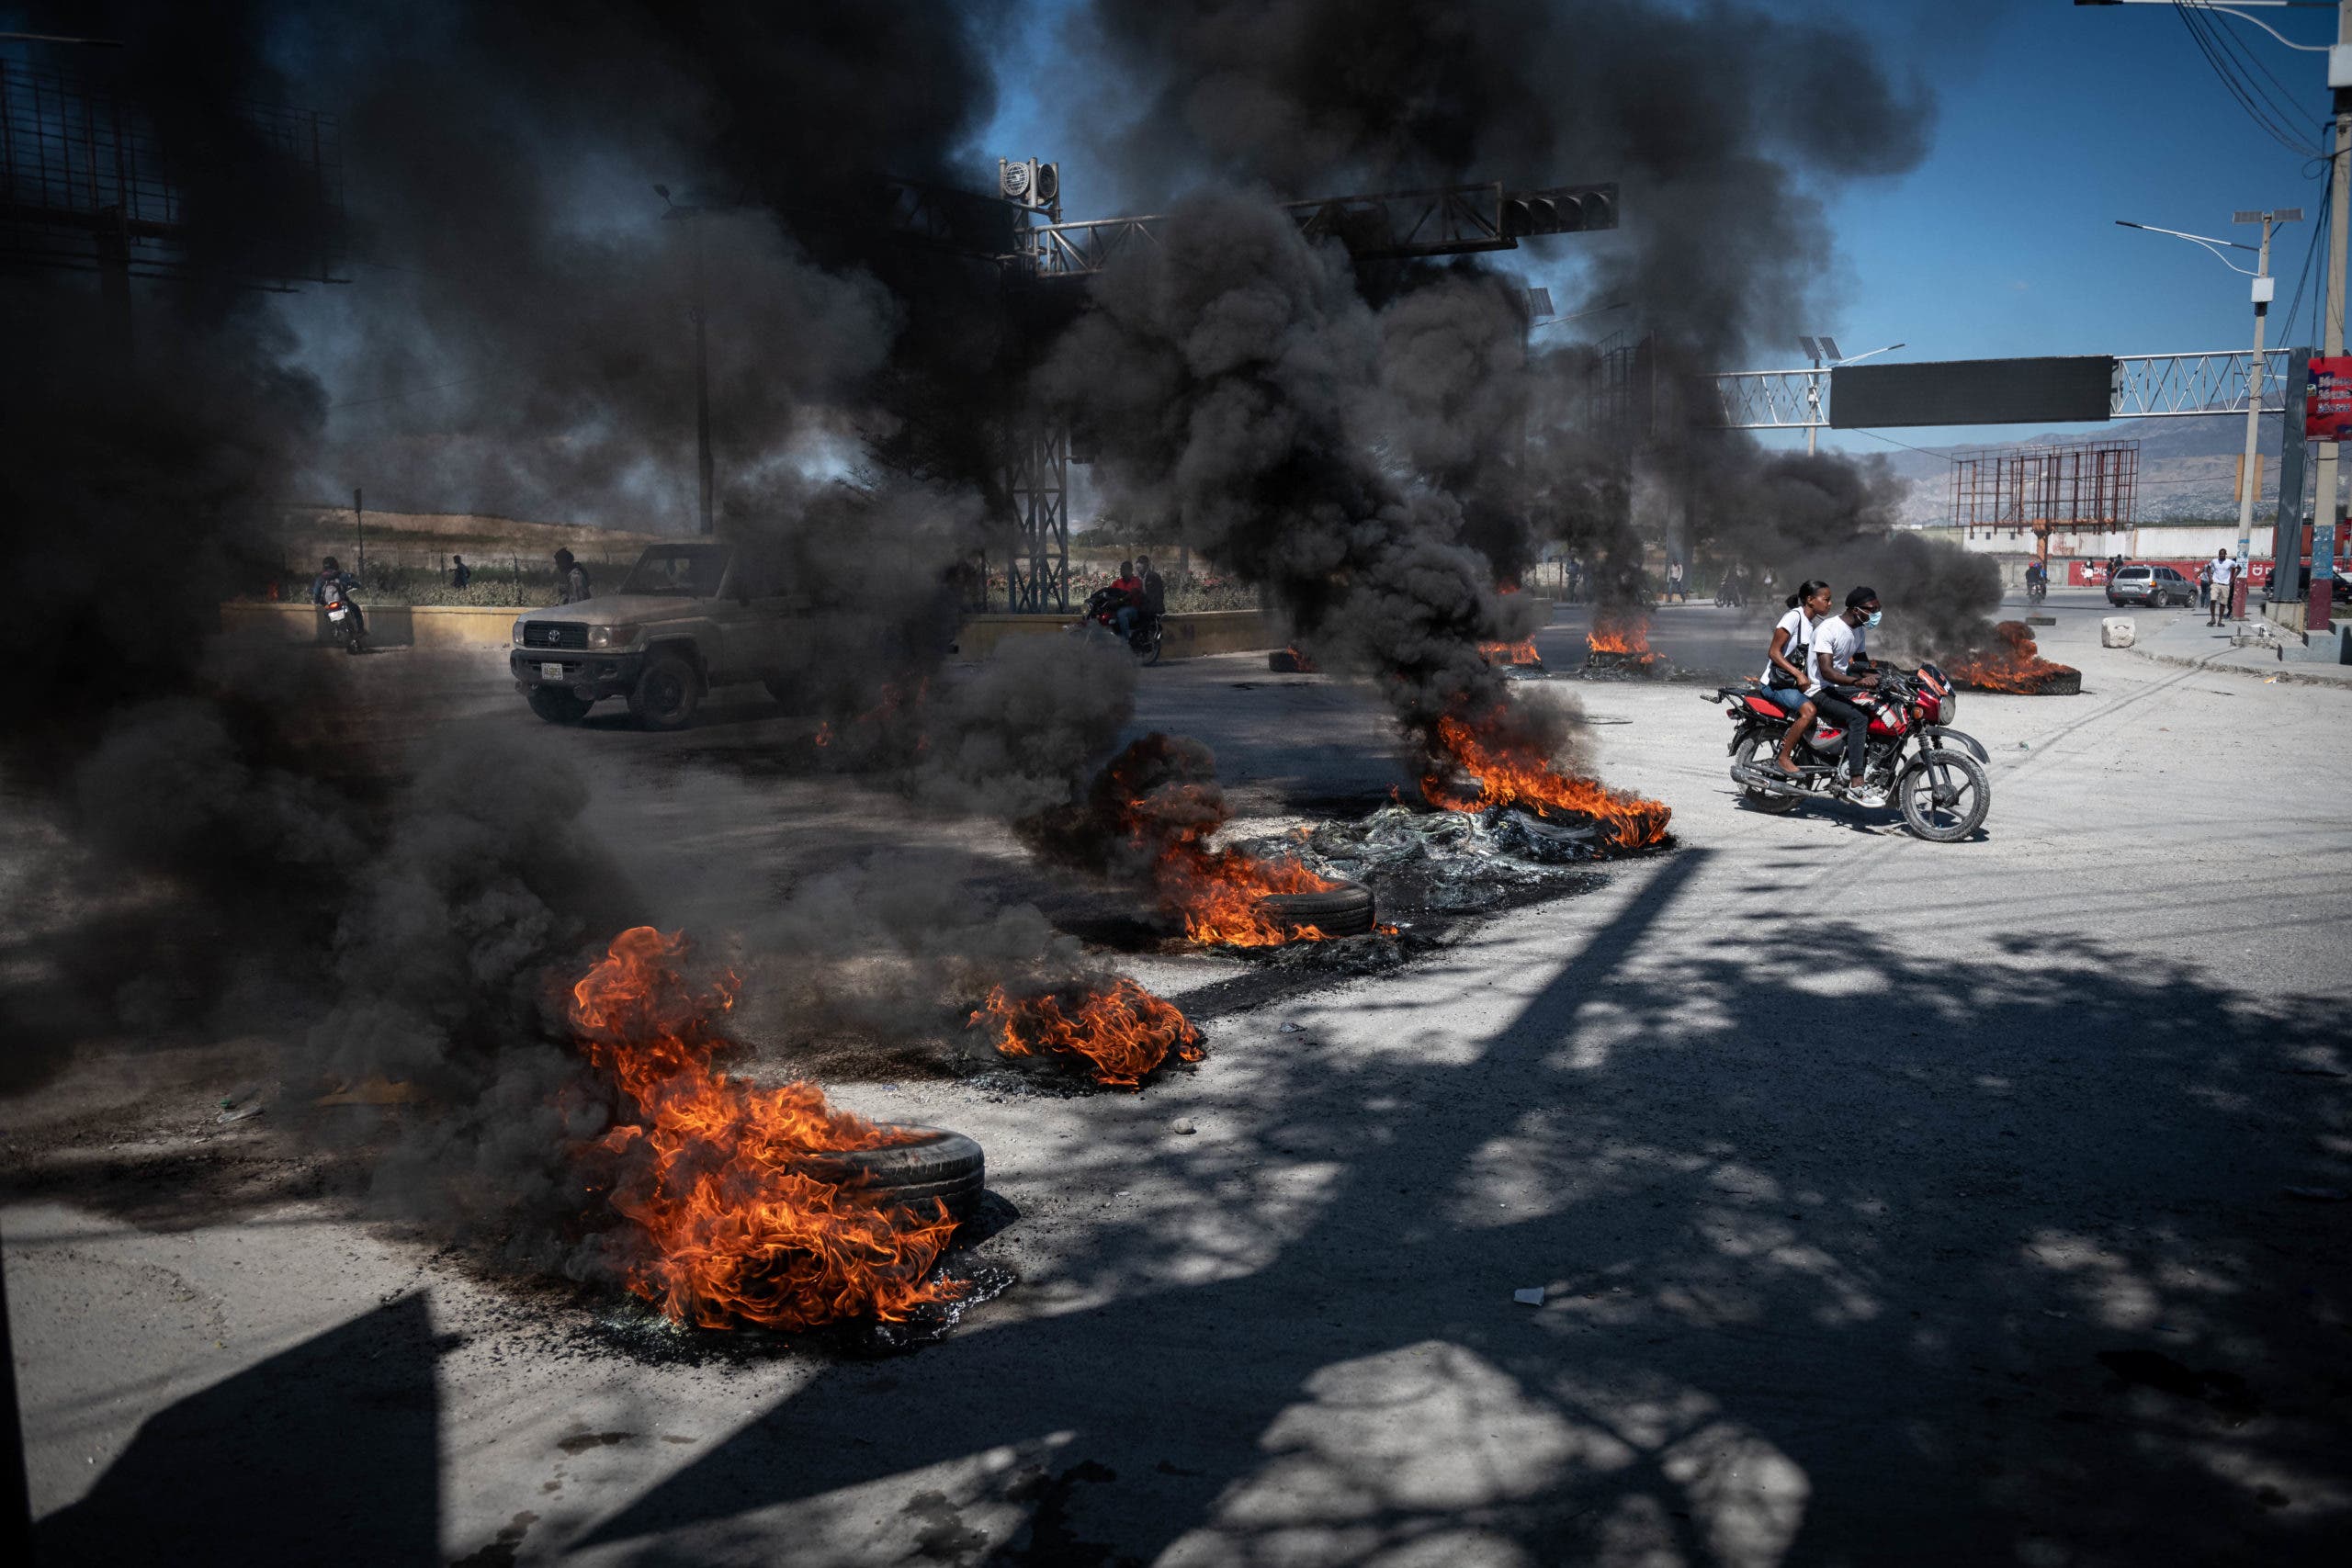 La ONU condena ataques a policías en Haití y pide perseguir a responsables